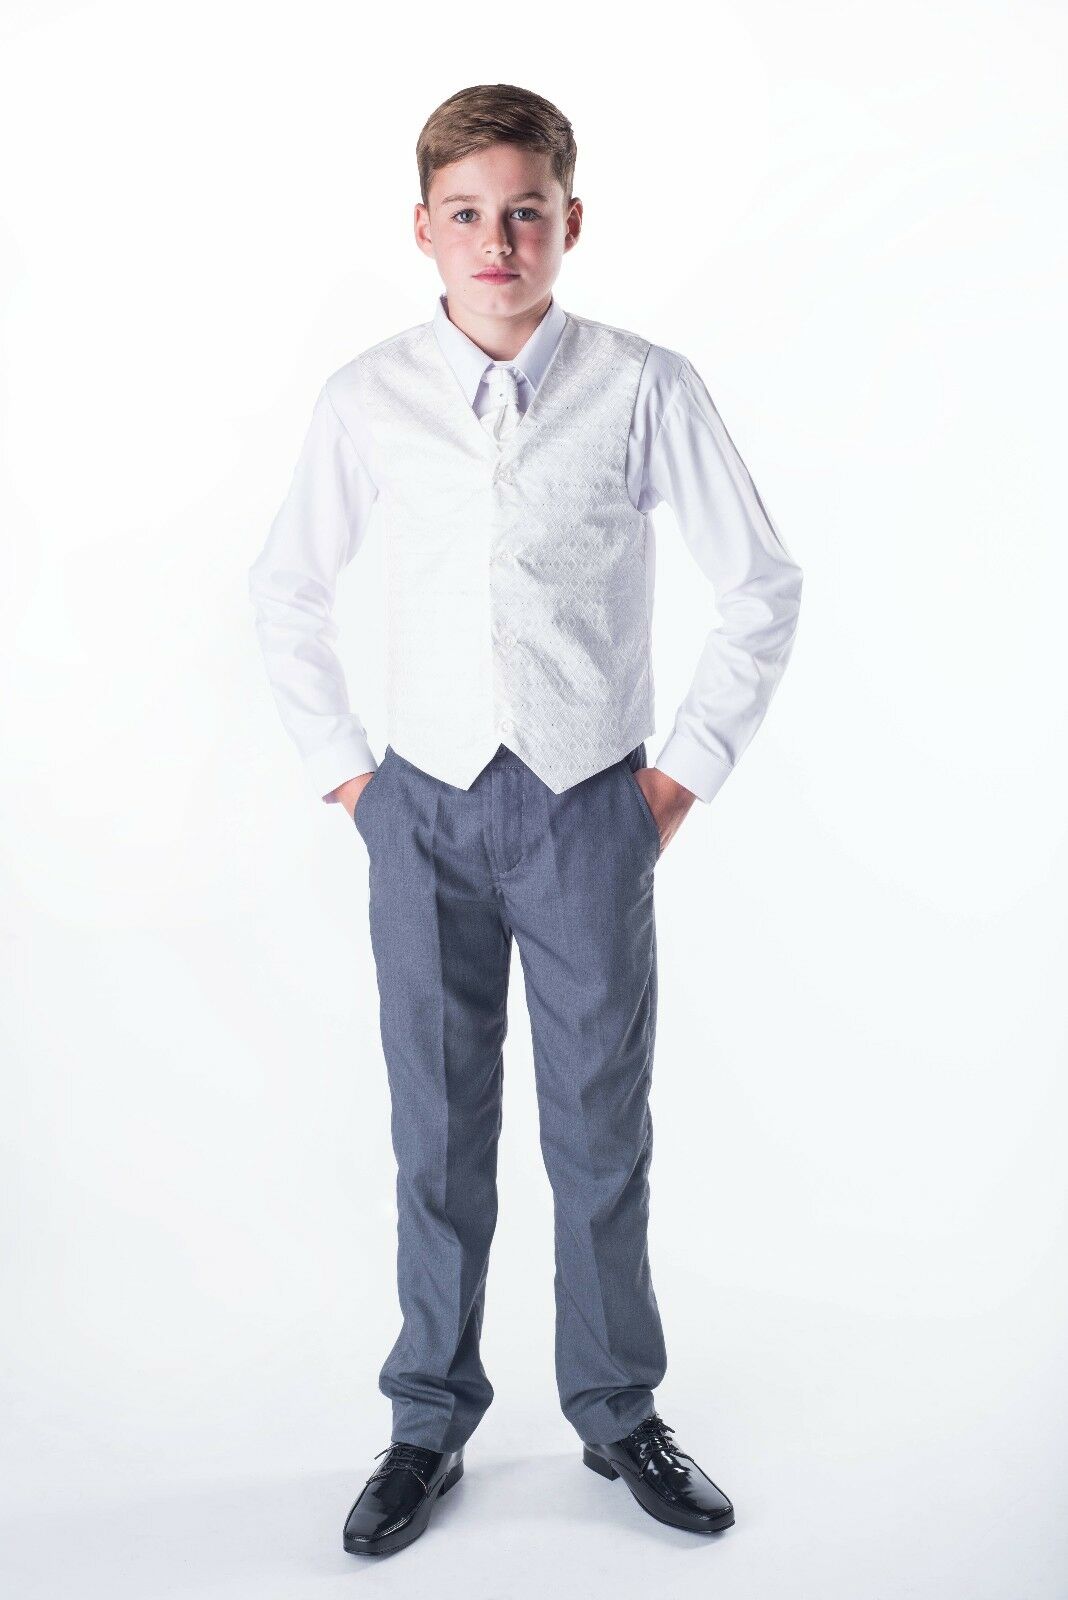 Vesta, košile, kalhoty kravata - chlapecký společenský komplet ivory